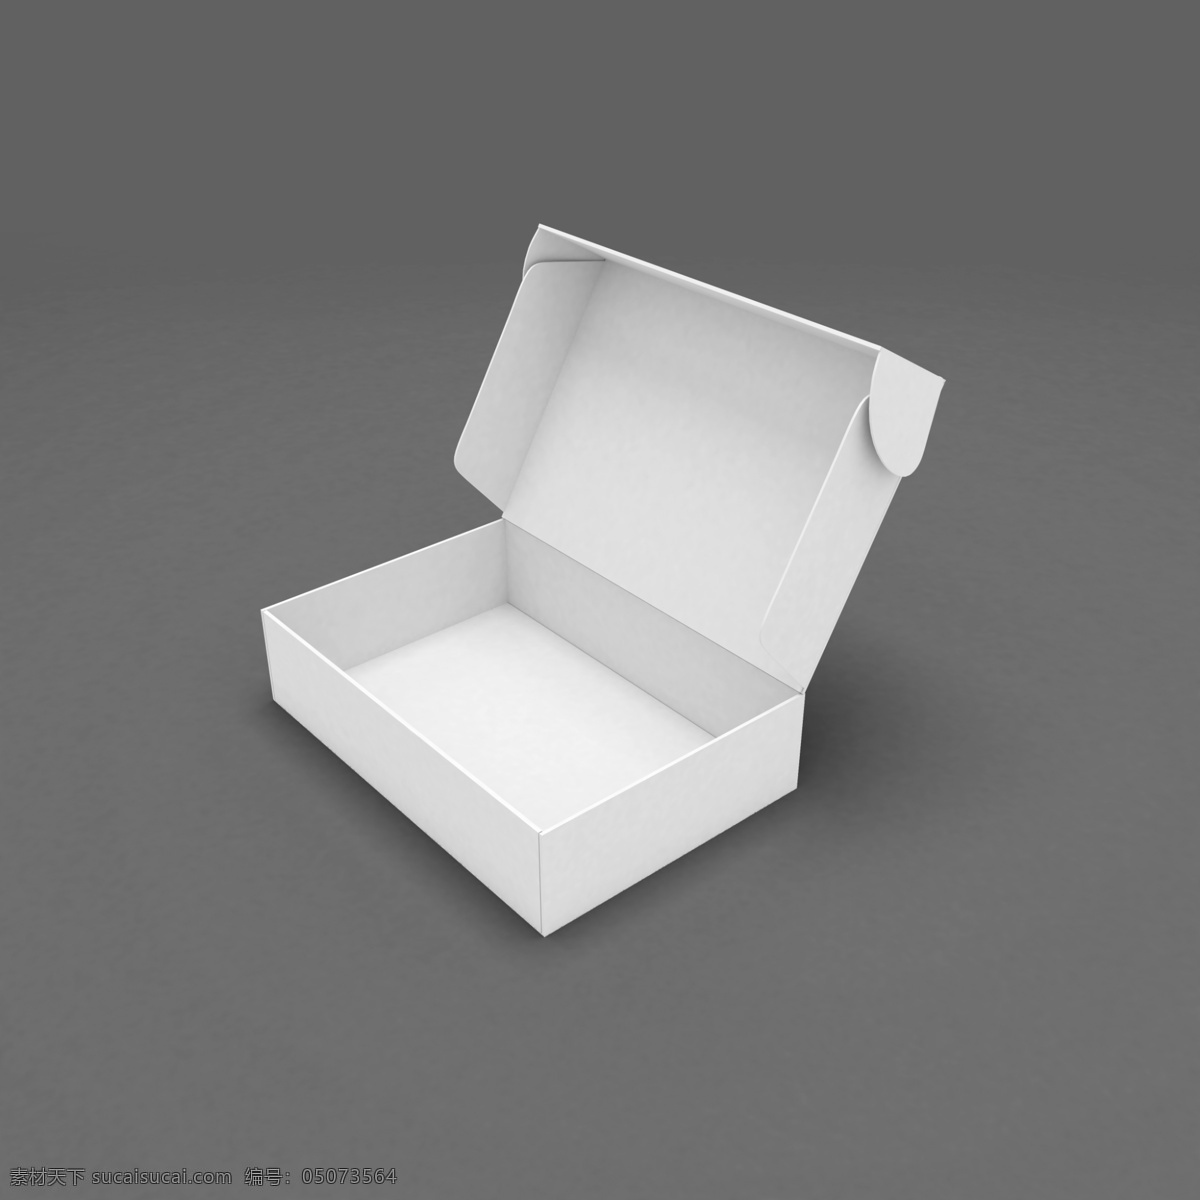 白色 飞机 盒 模型 右 侧面 飞机盒 白色模型 包装 盒子 psd分层 小小鸟 分层